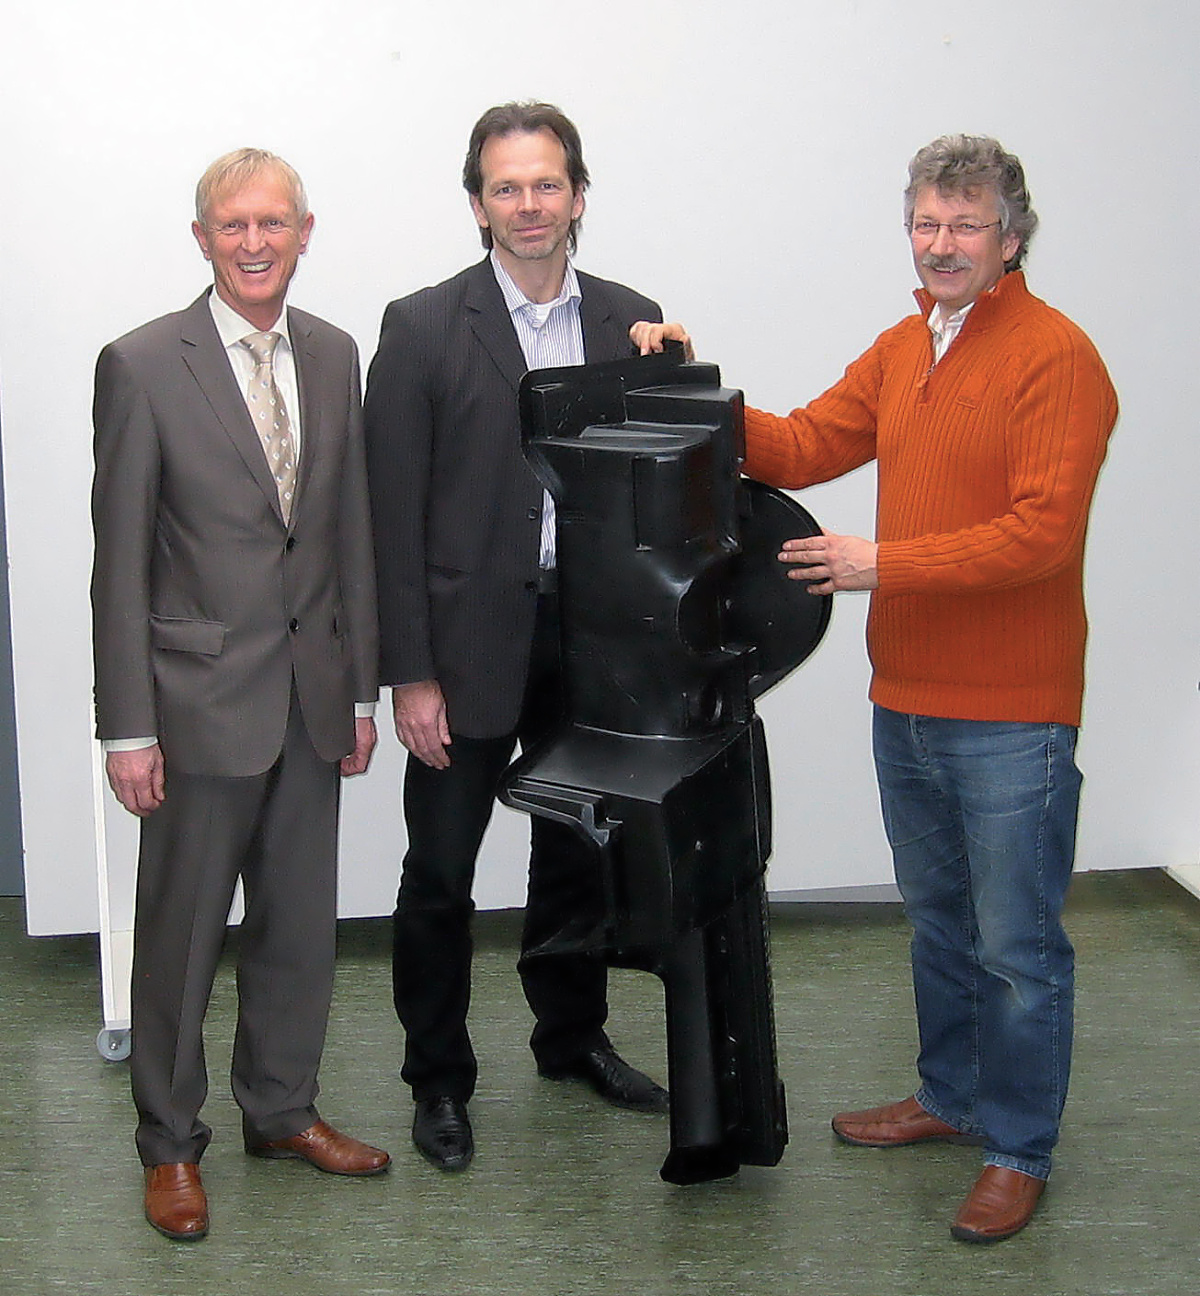 Jürgen Wabersich (Mürdter), Andreas Handschke (KraussMaffei) a Dr. Hartmut Traut (Trexel) představují první výsledky testů na největším MuCell zařízení na světě